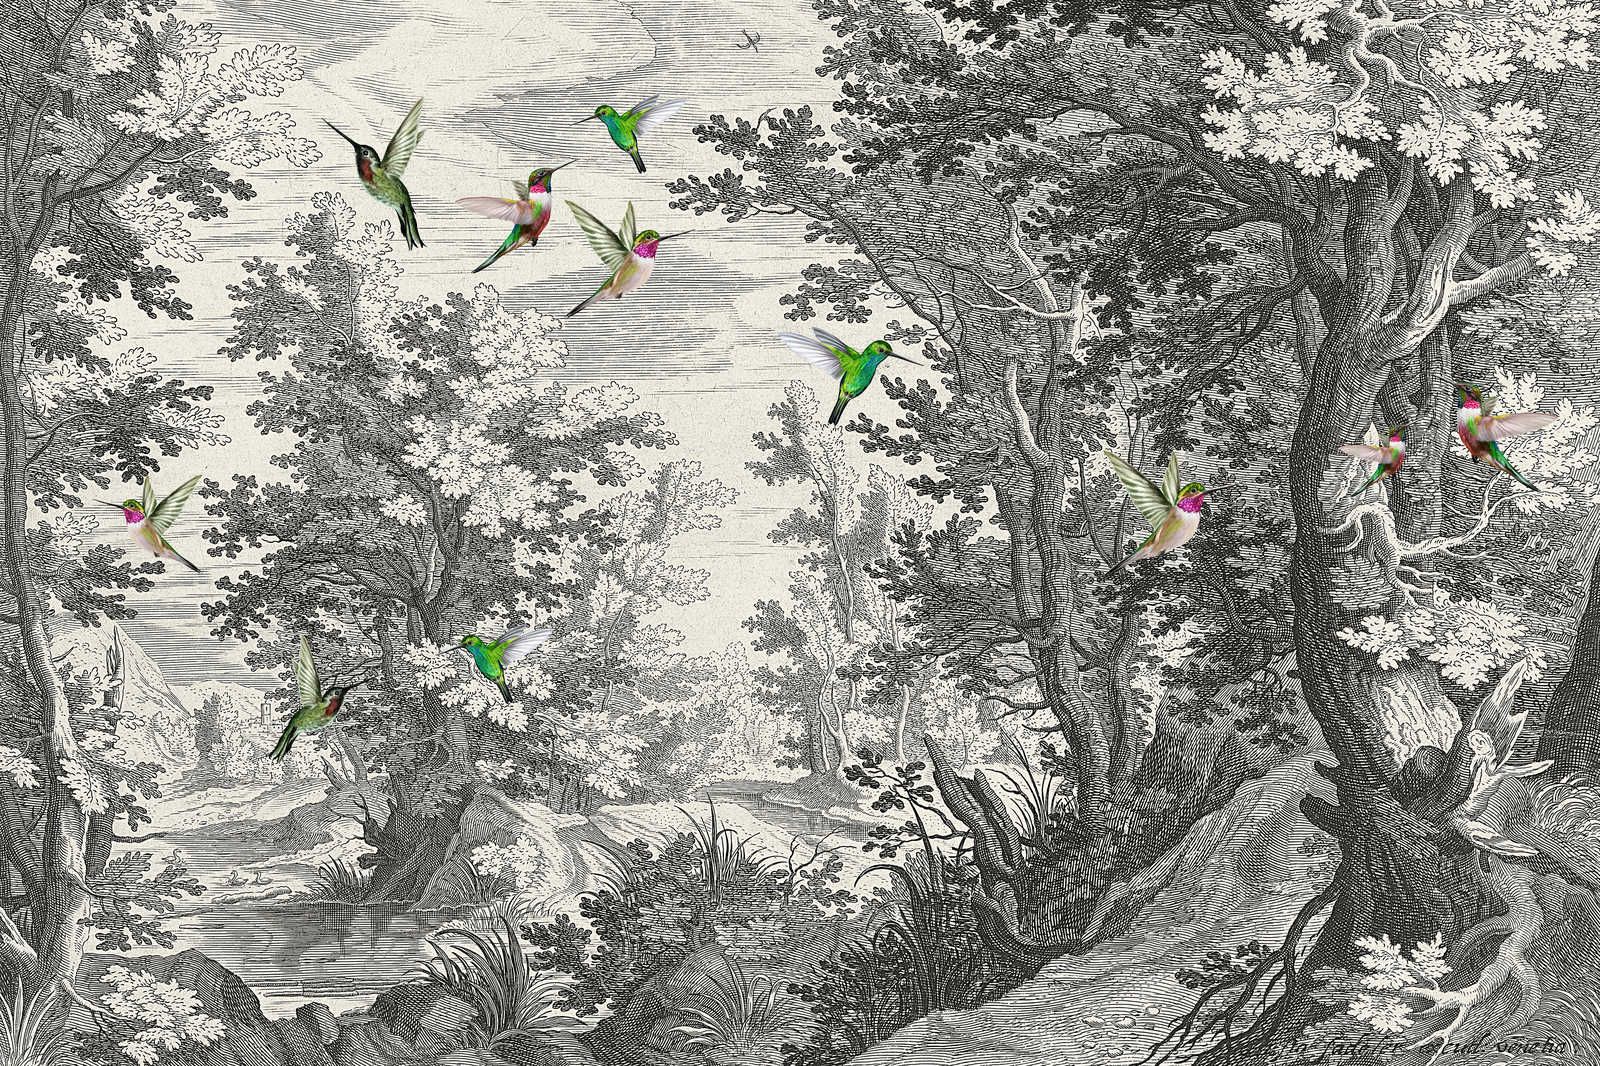             Fancy Forest 1 - Stampa su tela del paesaggio con uccelli - 0,90 m x 0,60 m
        